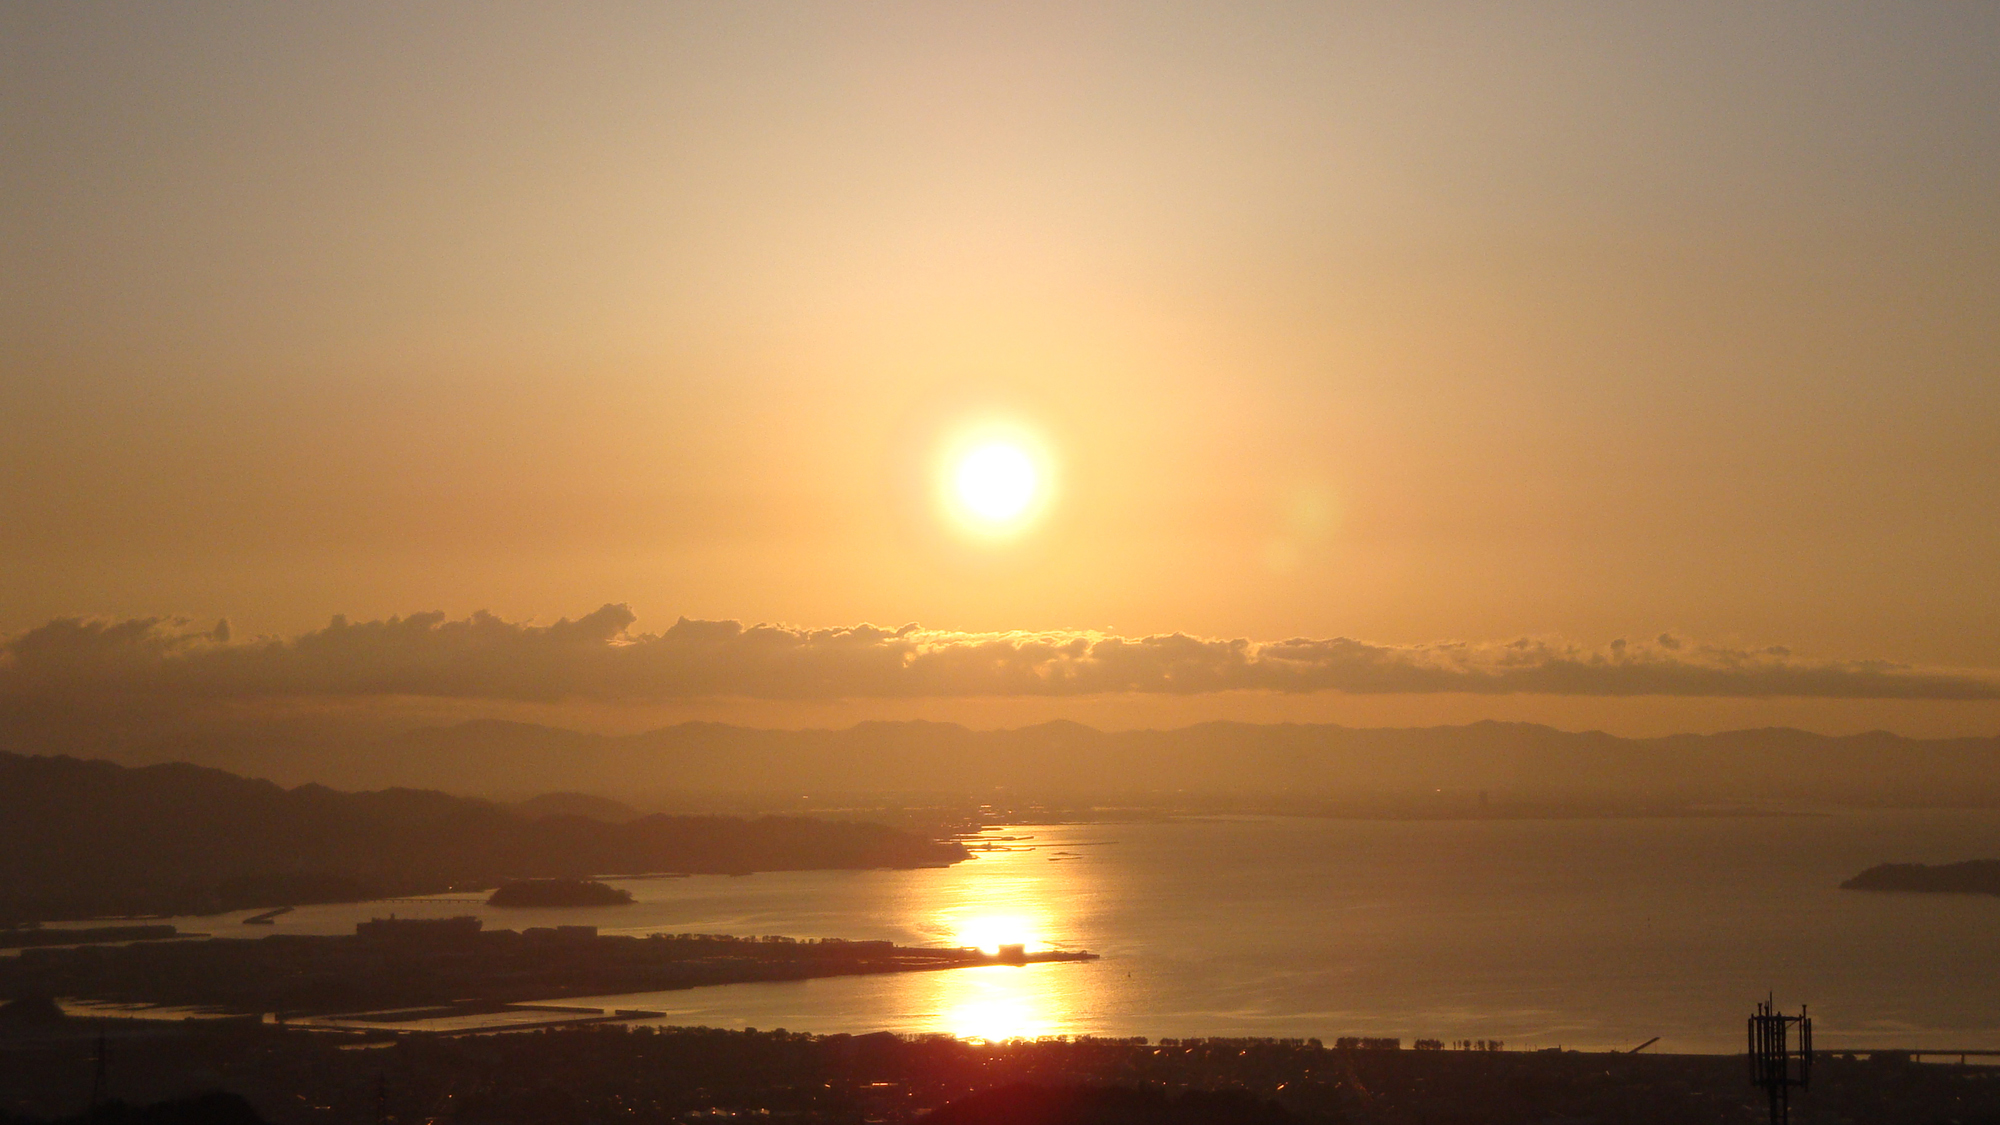 ◆【眺望】水平線から昇る晴れた日の朝日は、息をのむ美しさ。